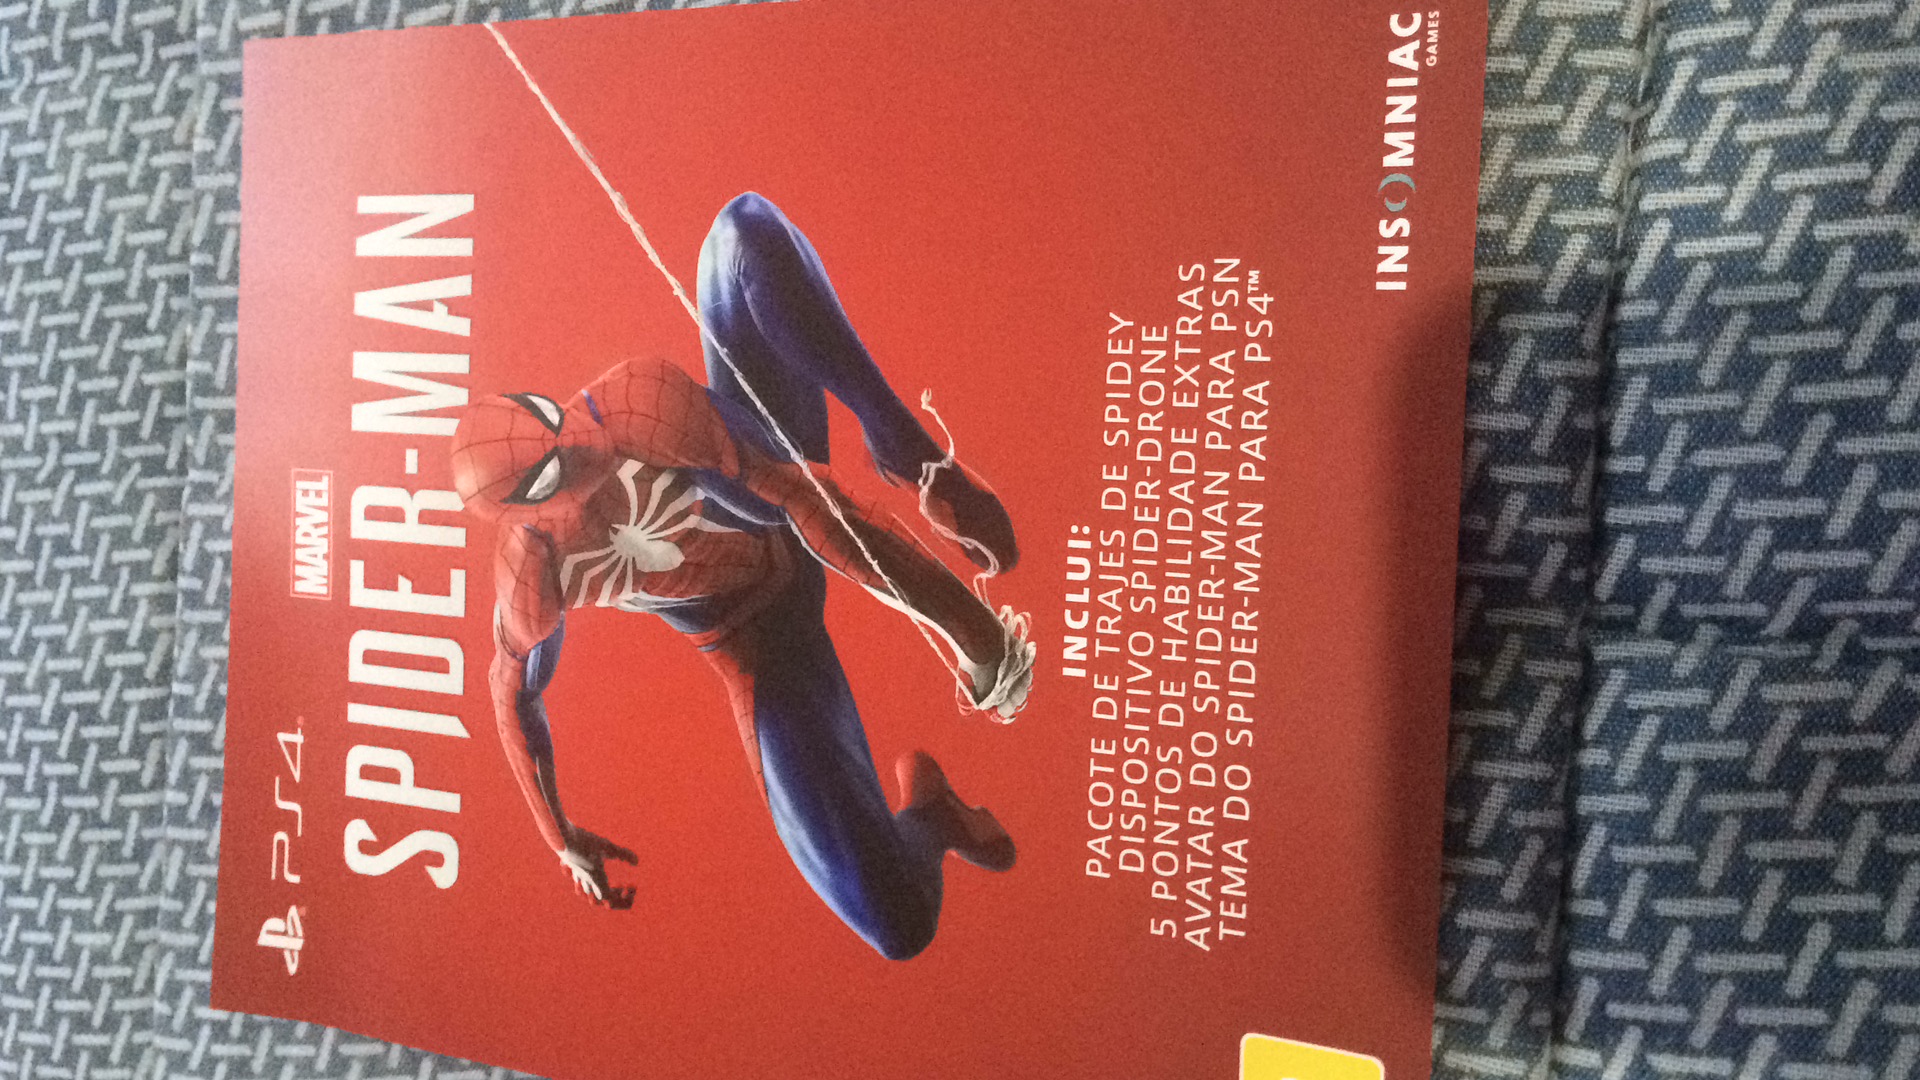 Spider-man PS4 / Homem Aranha PS4 - #14 - Gameplay Dublado e Legendado  PT-BR Português 